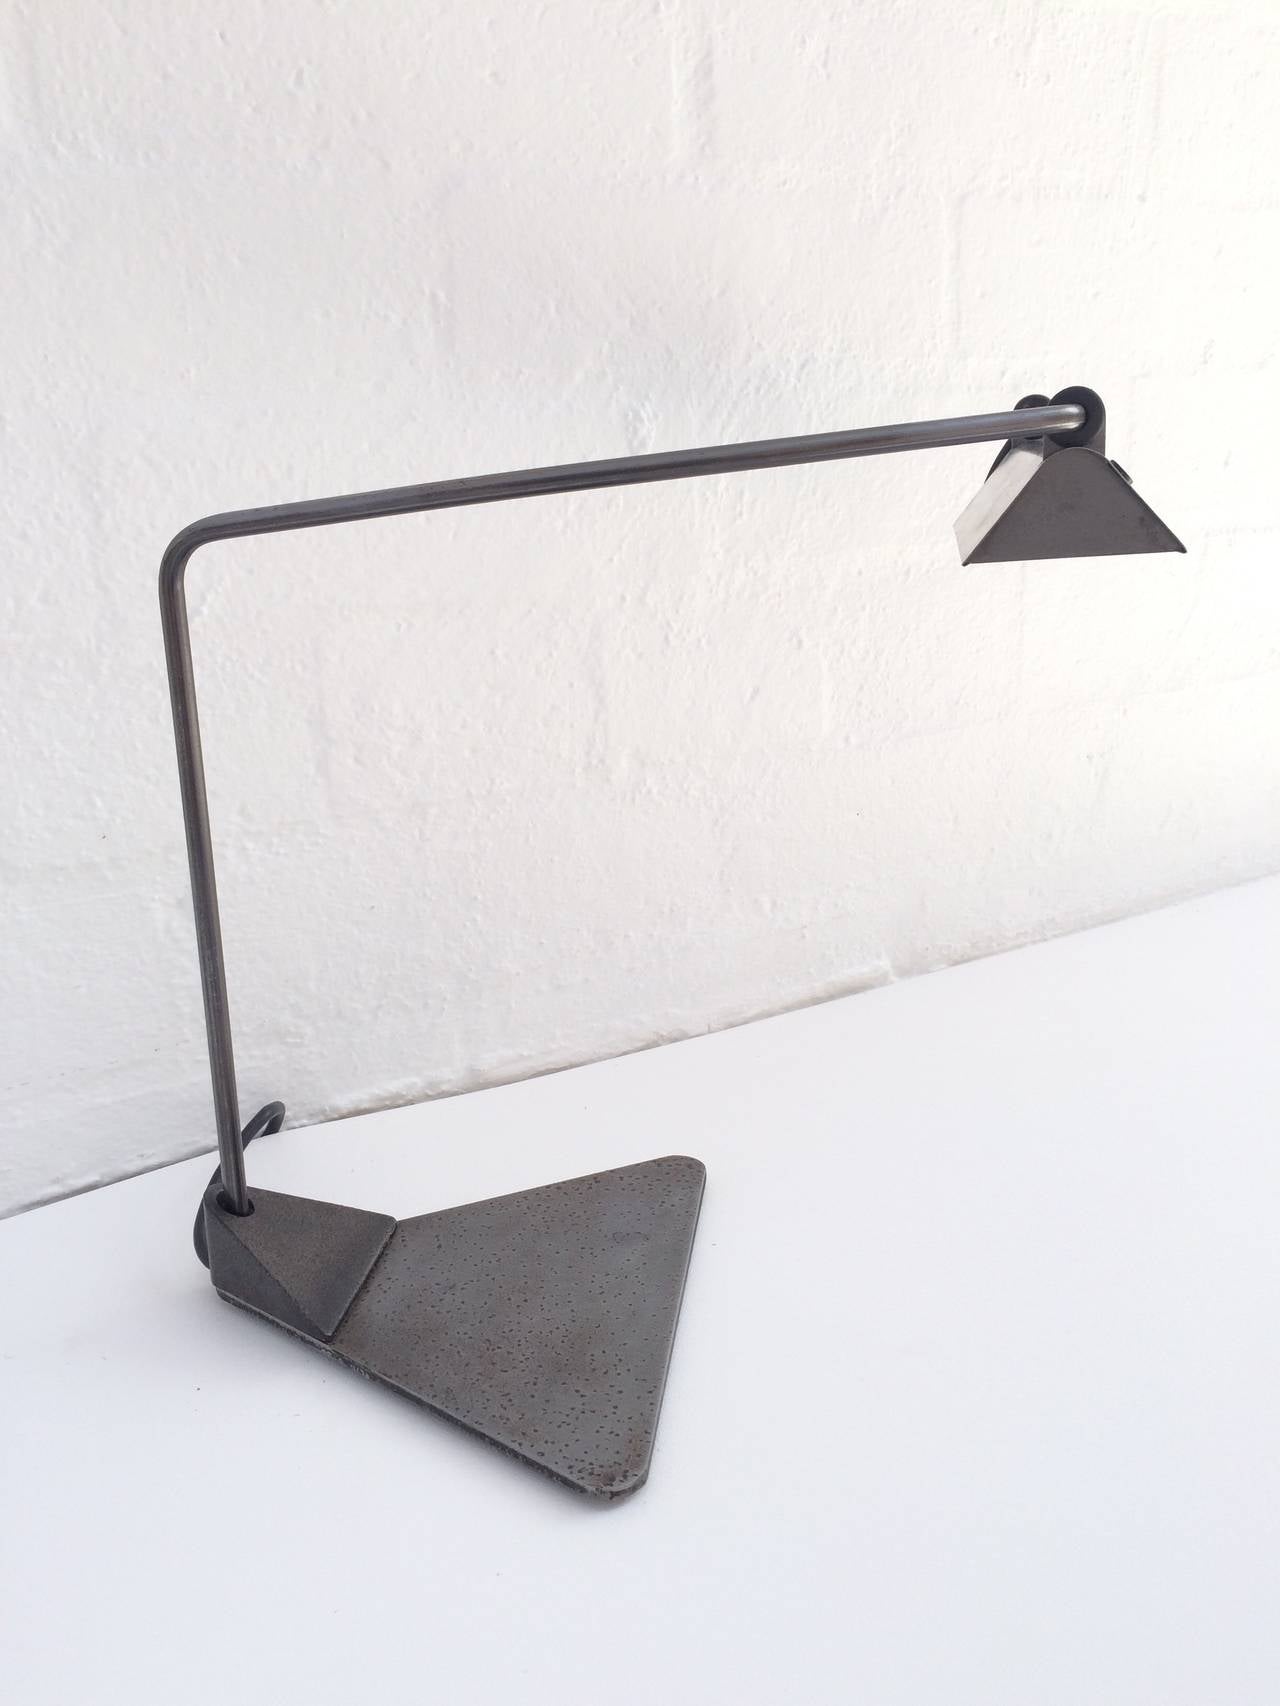 Schreibtischlampe, entworfen von Ron Rezek. 
Diese Lampe hat eine Oberfläche aus rohem Stahl, einen verstellbaren Arm und einen Schirm,
ca. 1980er Jahre.